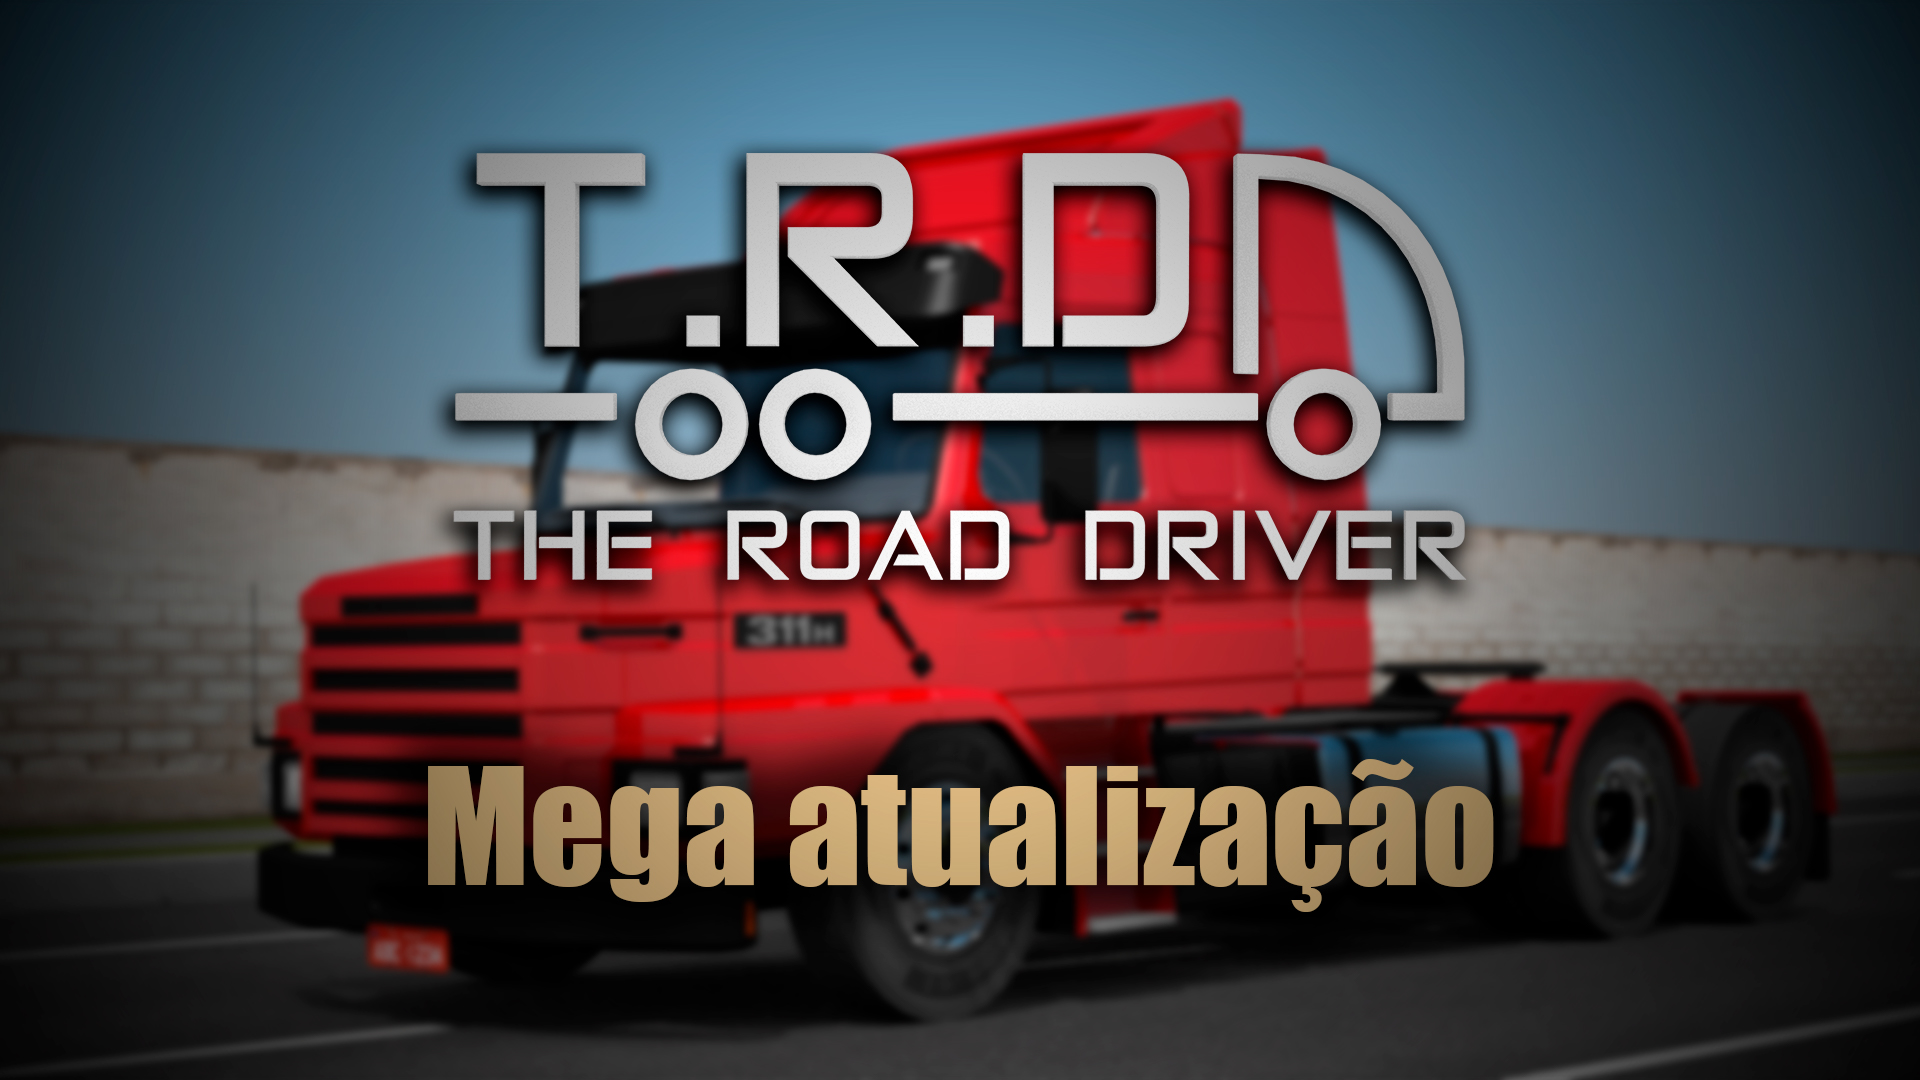 The Road Driver - Versão iOS dísponivel! Olá pessoal